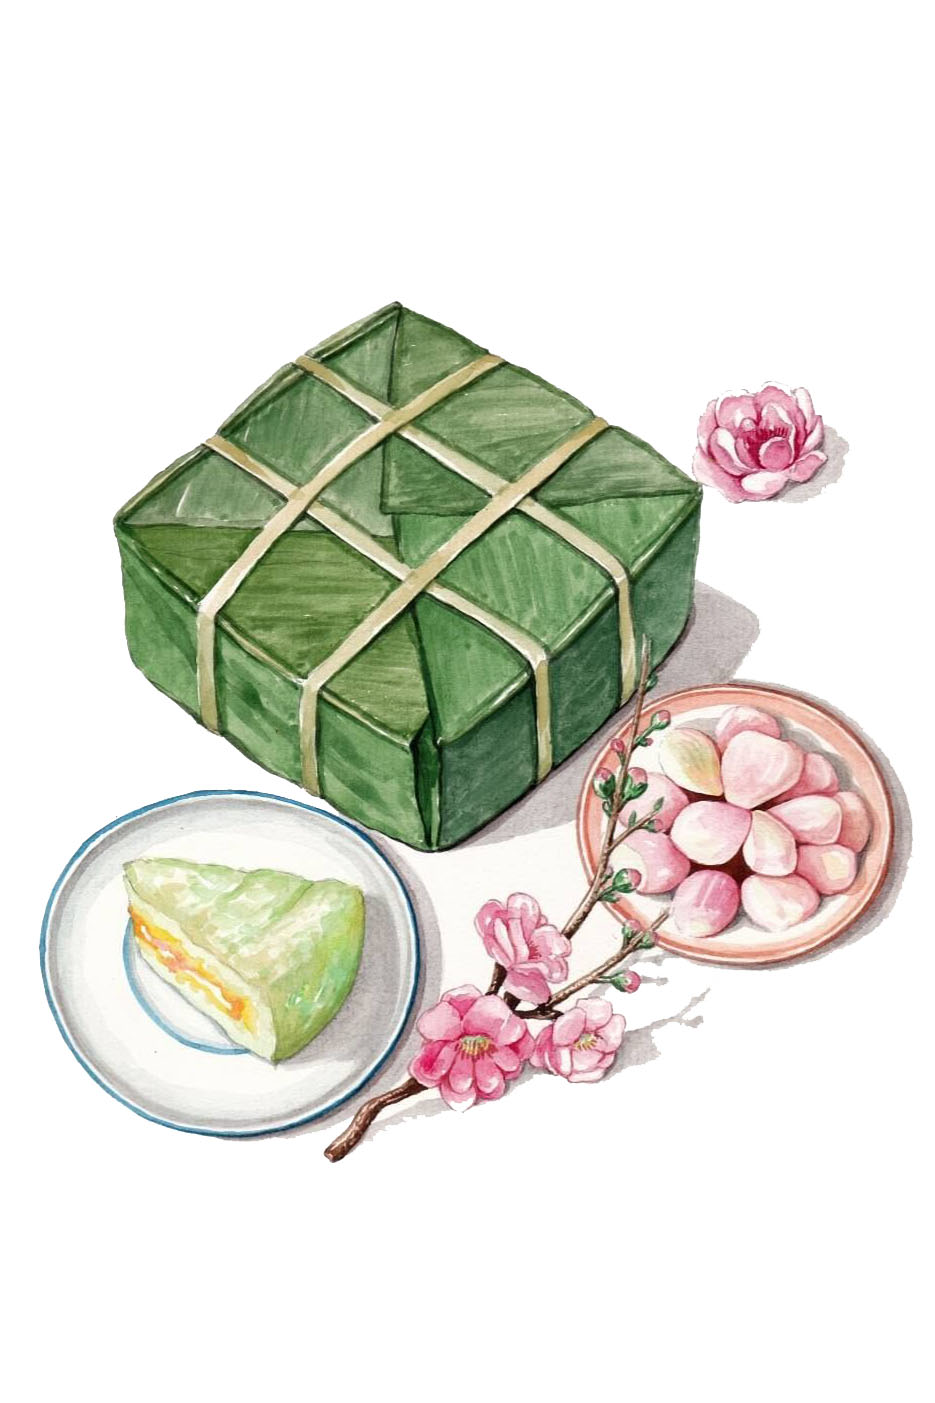 Hình ảnh bánh chưng: Bánh chưng là một trong những nét văn hóa đặc trưng của Việt Nam. Hãy xem những hình ảnh bánh chưng để thấy sự tinh tế, khéo léo và đẹp đẽ trong cách làm và trang trí của người Việt.